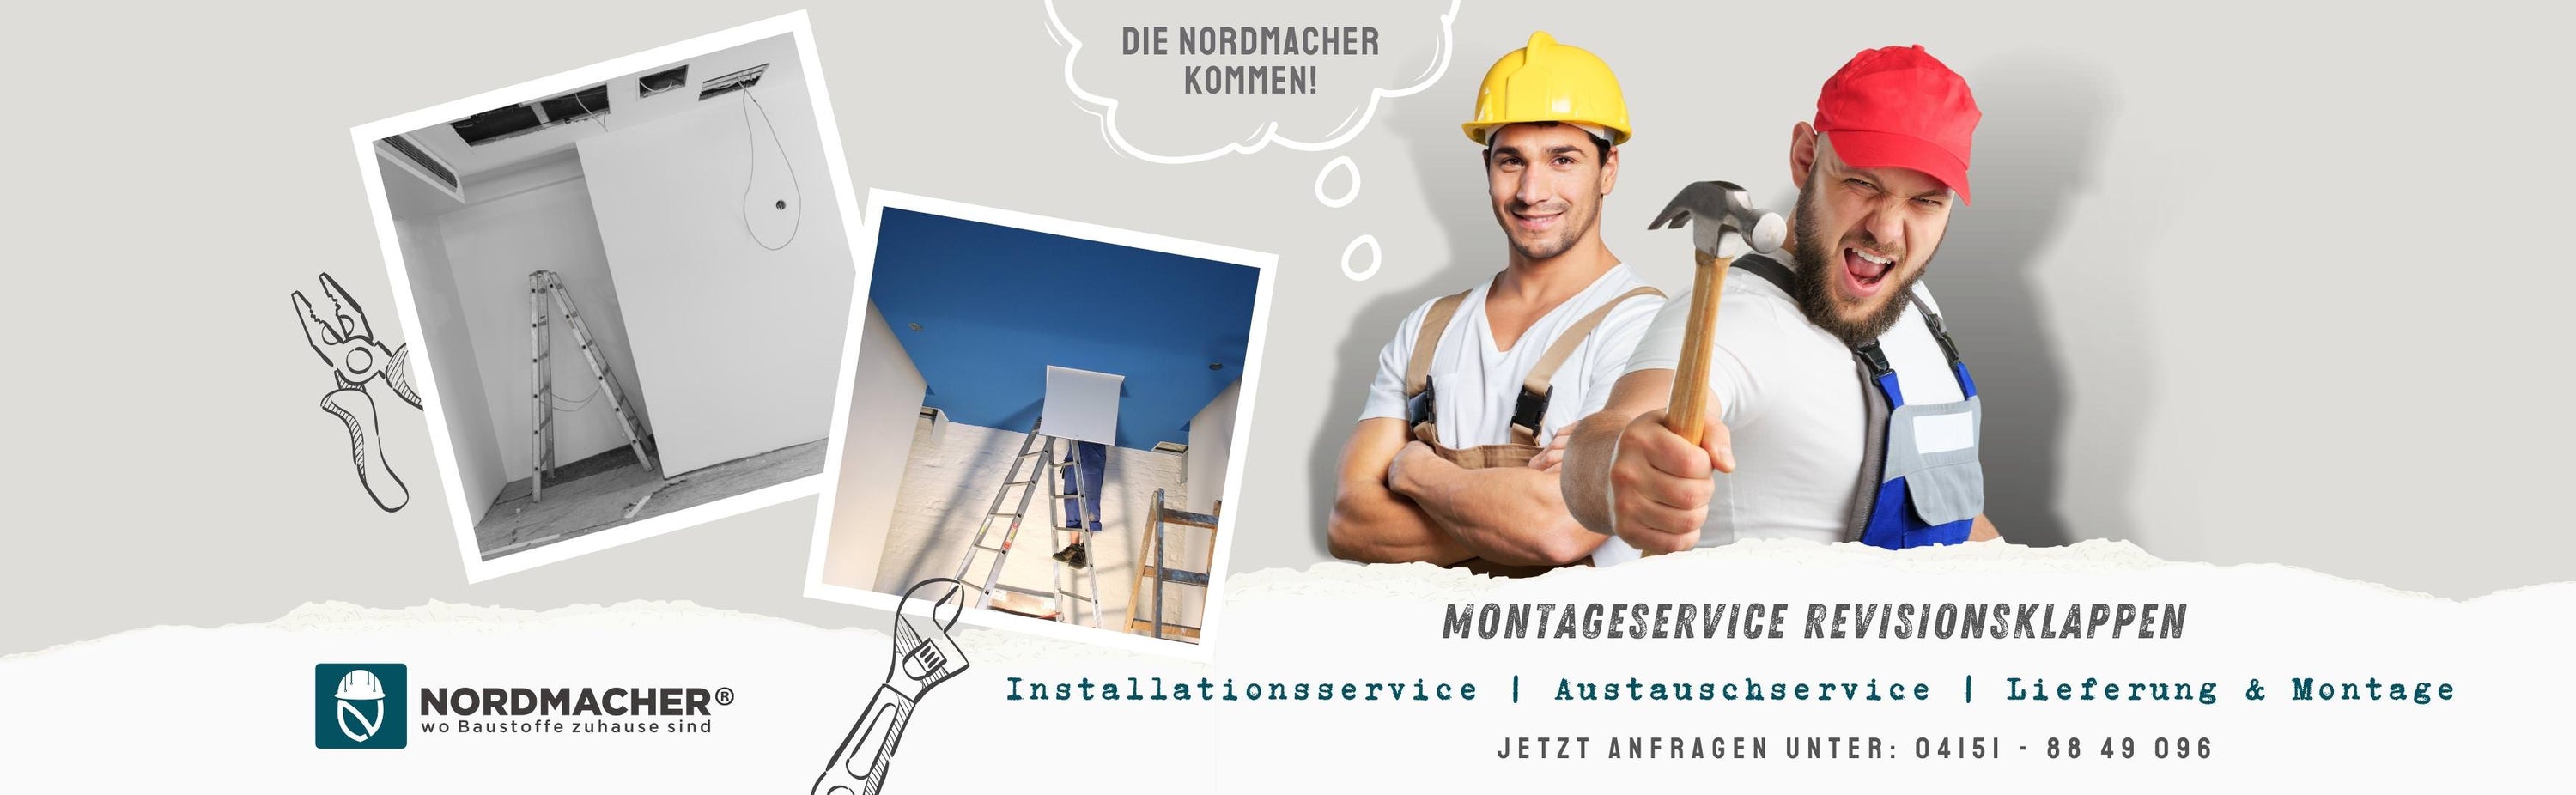 Nordmacher Montageservice | Handwerker für Bauwerksabdichtungen, Revisionsklappen und Brandschutzklappen